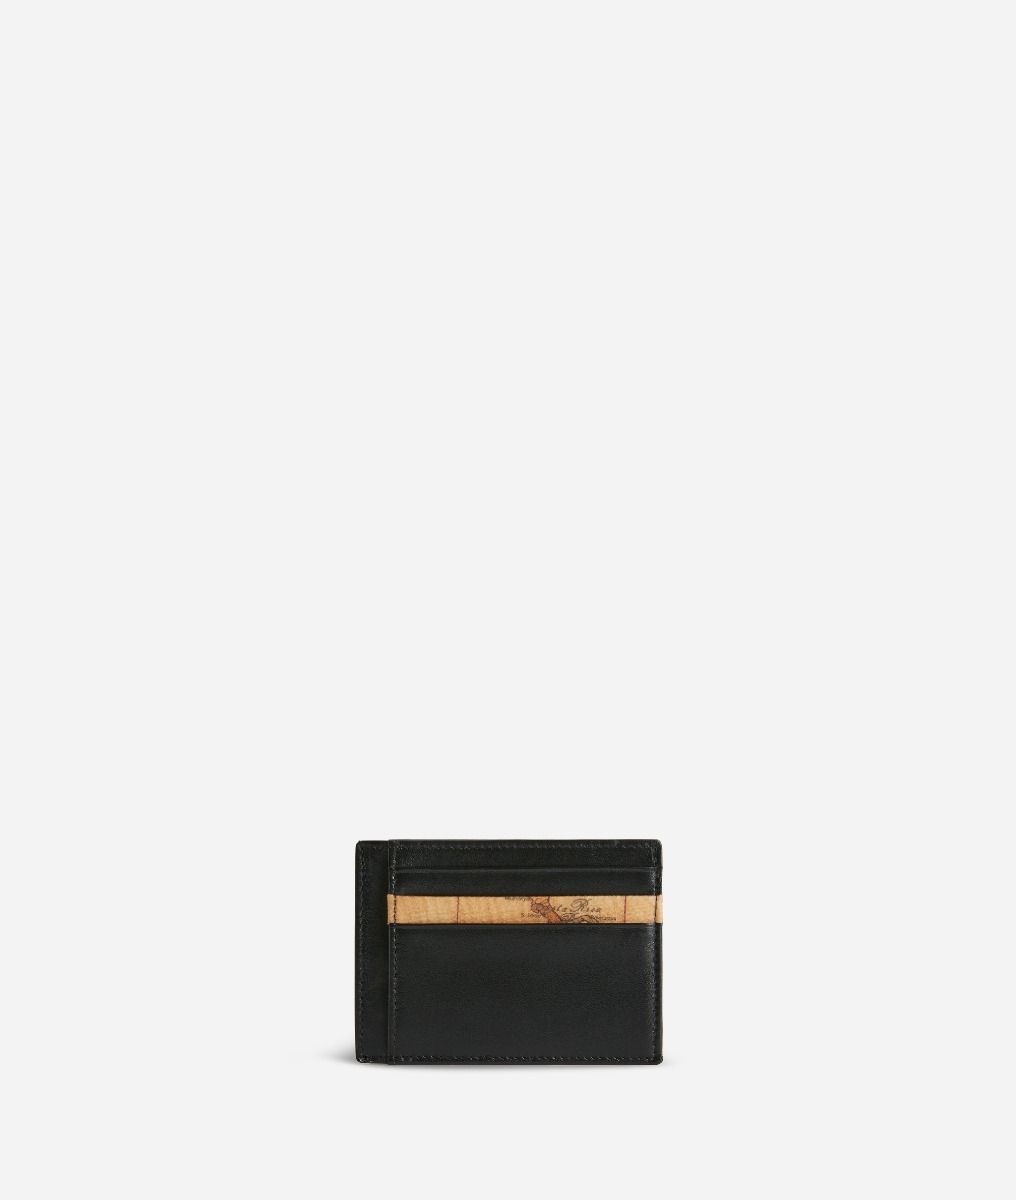 Geo Classic portacarte piccolo in pelle nero,front